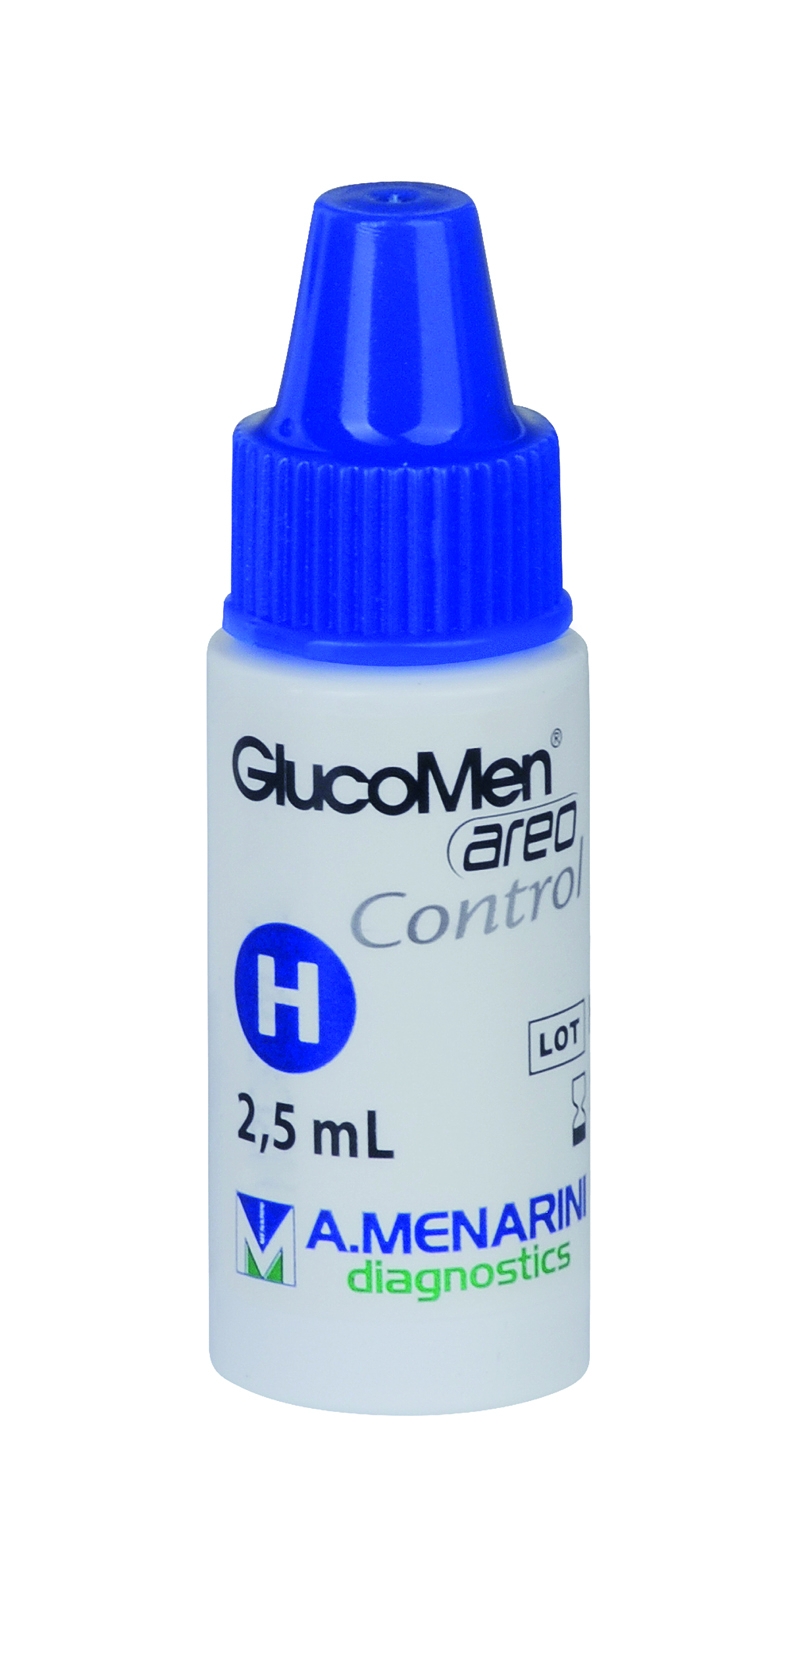 GlucoMen areo Control H 2,5ml